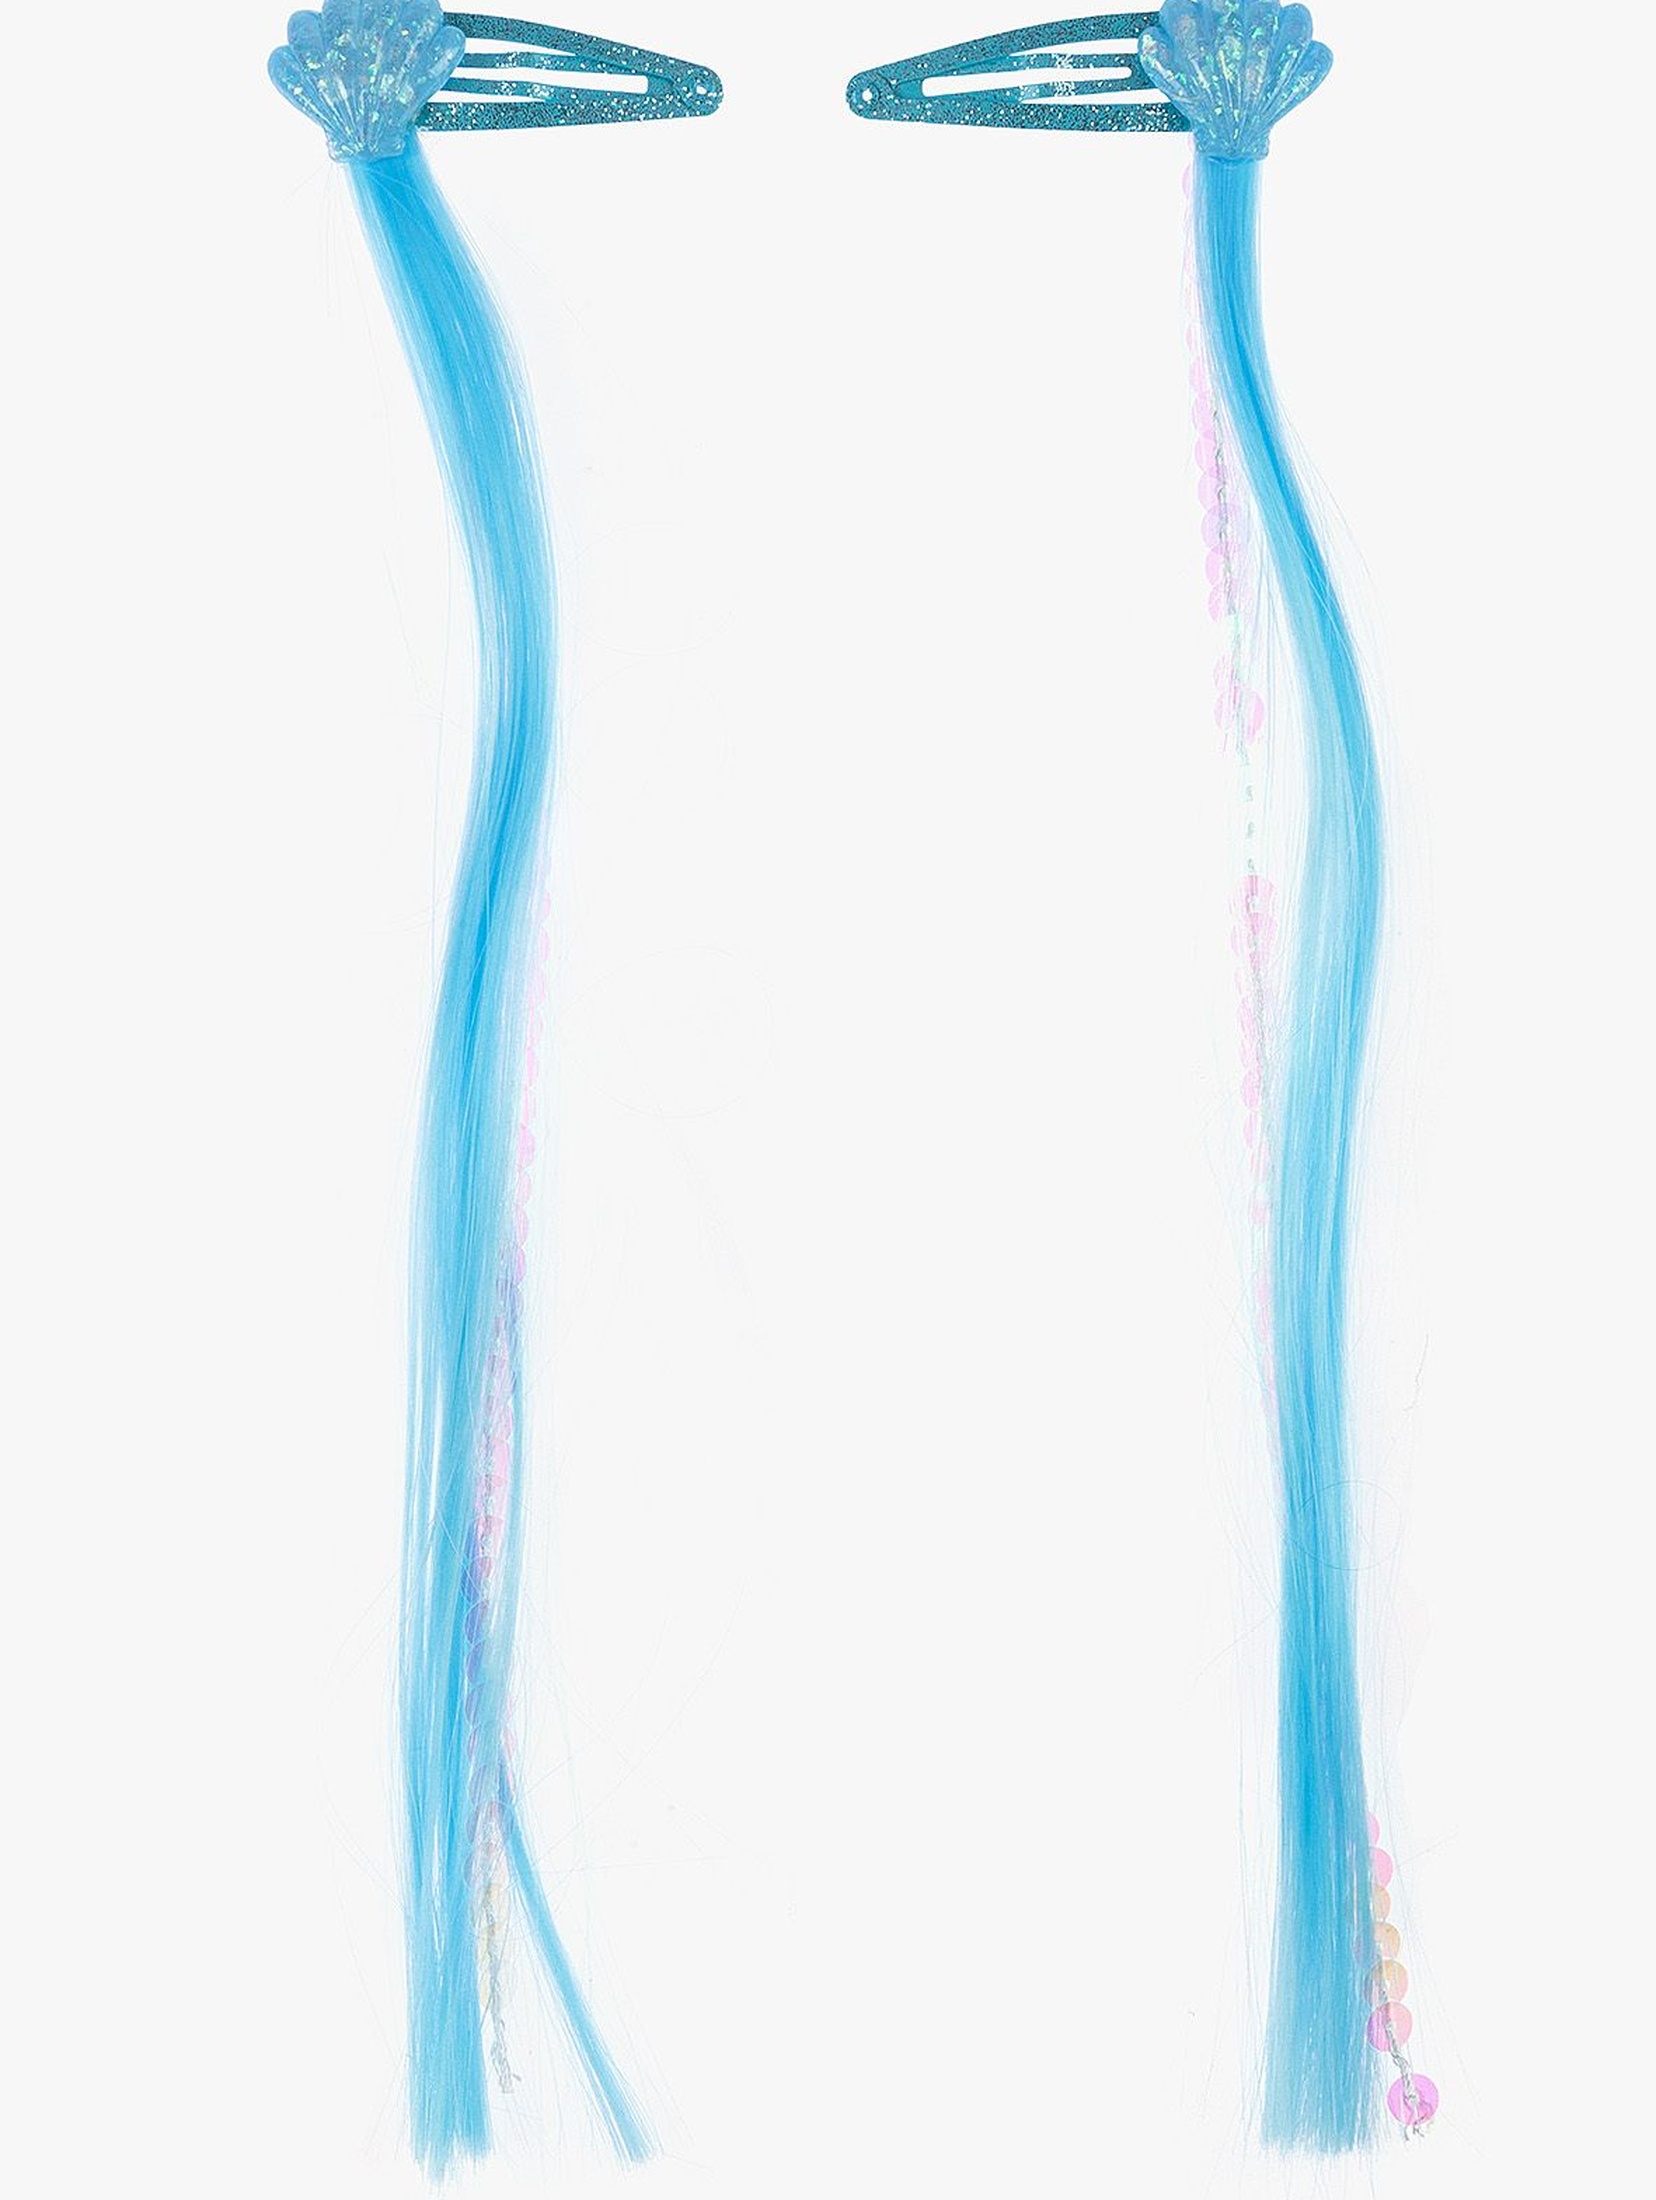 Spinki do włosów -Muszelki z przedłużanymi niebieskimi włosami